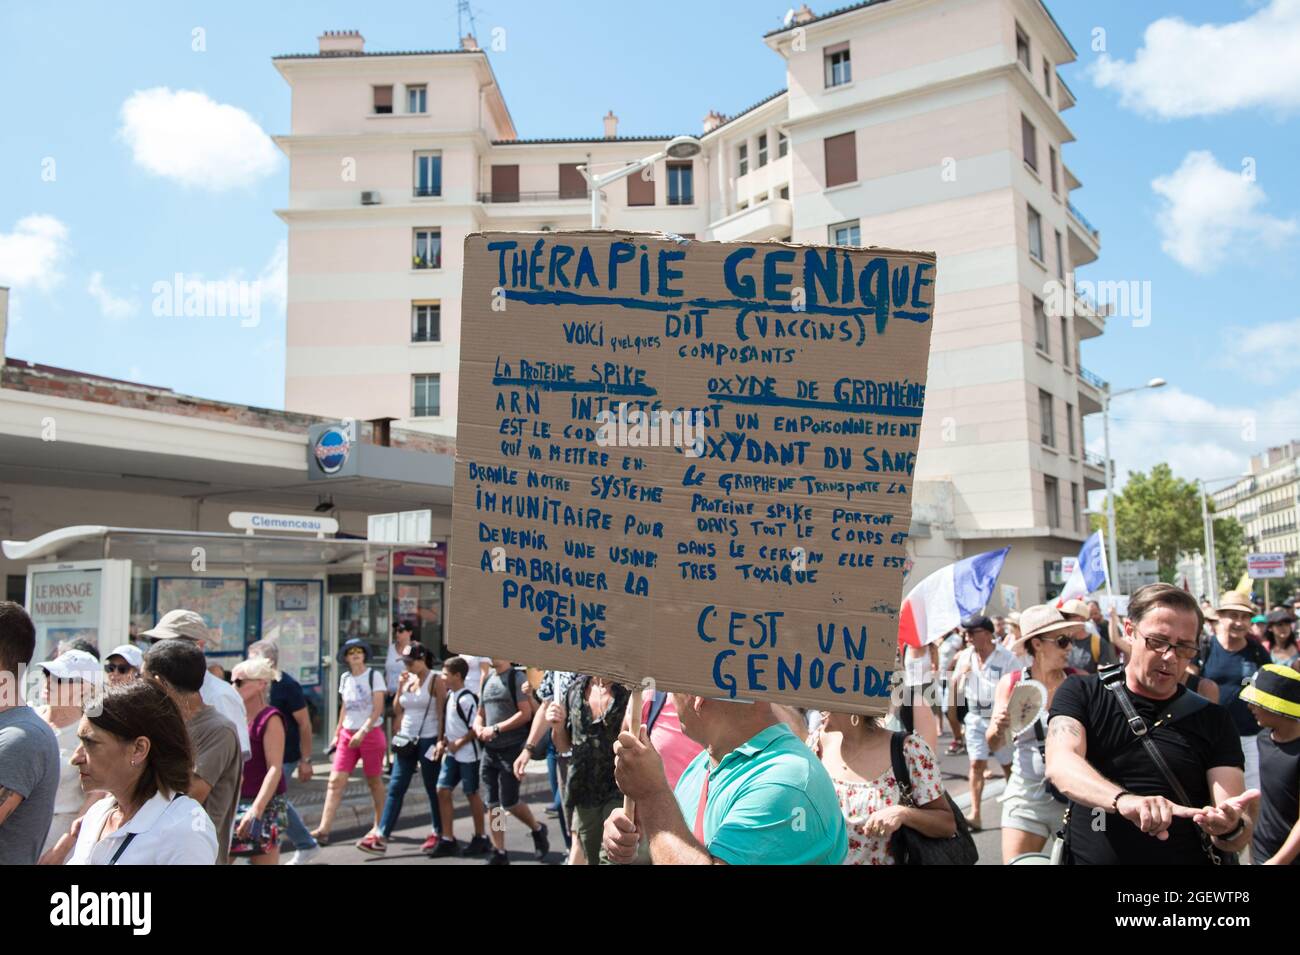 21. August 2020, Toulon, var, Frankreich: Ein Demonstrator mit einem Plakat, auf dem erklärt wird, dass die Gentherapie des Boten-RNA-Impfstoffs ein Gift ist, das während des Protestes in die Körper von Menschen gespritzt wird.am Samstag, dem 21. August 2021, ist der sechste Tag der Mobilisierung gegen die Impfpolitik und die Anwendung des Gesundheitsausweises. In Toulon (Var) gab es laut Behörden 6000 Demonstranten. Die Hauptlosungen kritisieren die Regierungsentscheidungen als diktatorisch. Einige der Plakate enthalten Schilder und Slogans, die die aktuelle Situation mit dem Nazi-Regime und dem Zweiten Weltkrieg vergleichen. (Bild: © Stockfoto